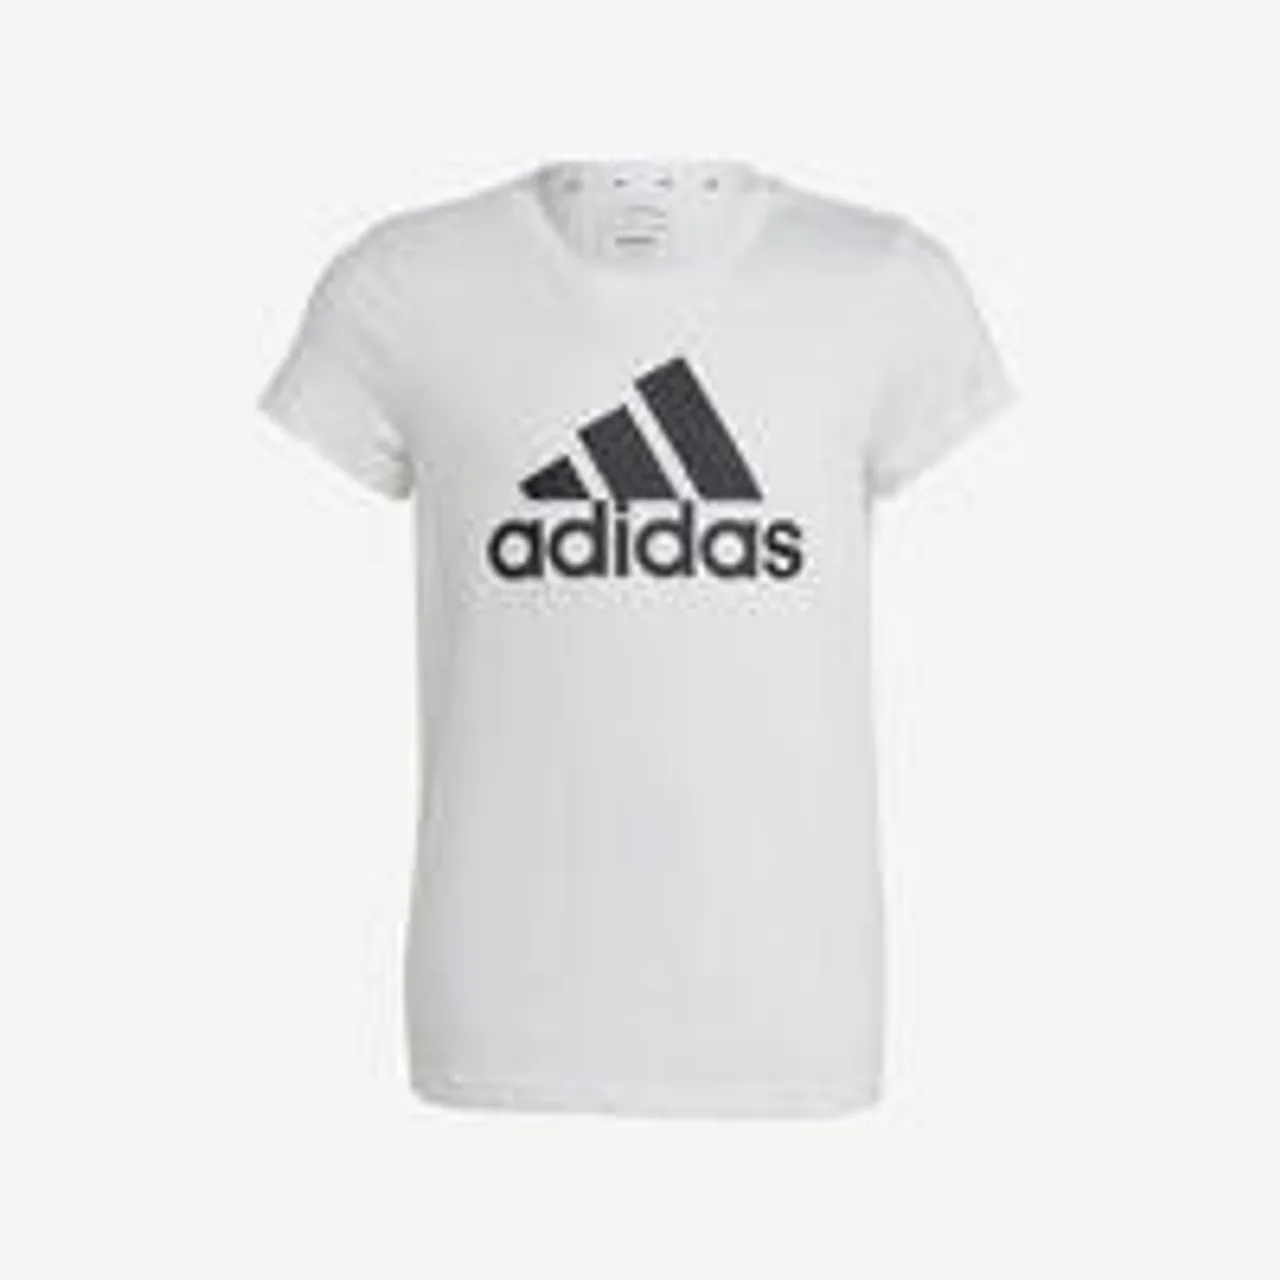 ADIDAS T-Shirt Mädchen - weiss mit schwarzem Logo